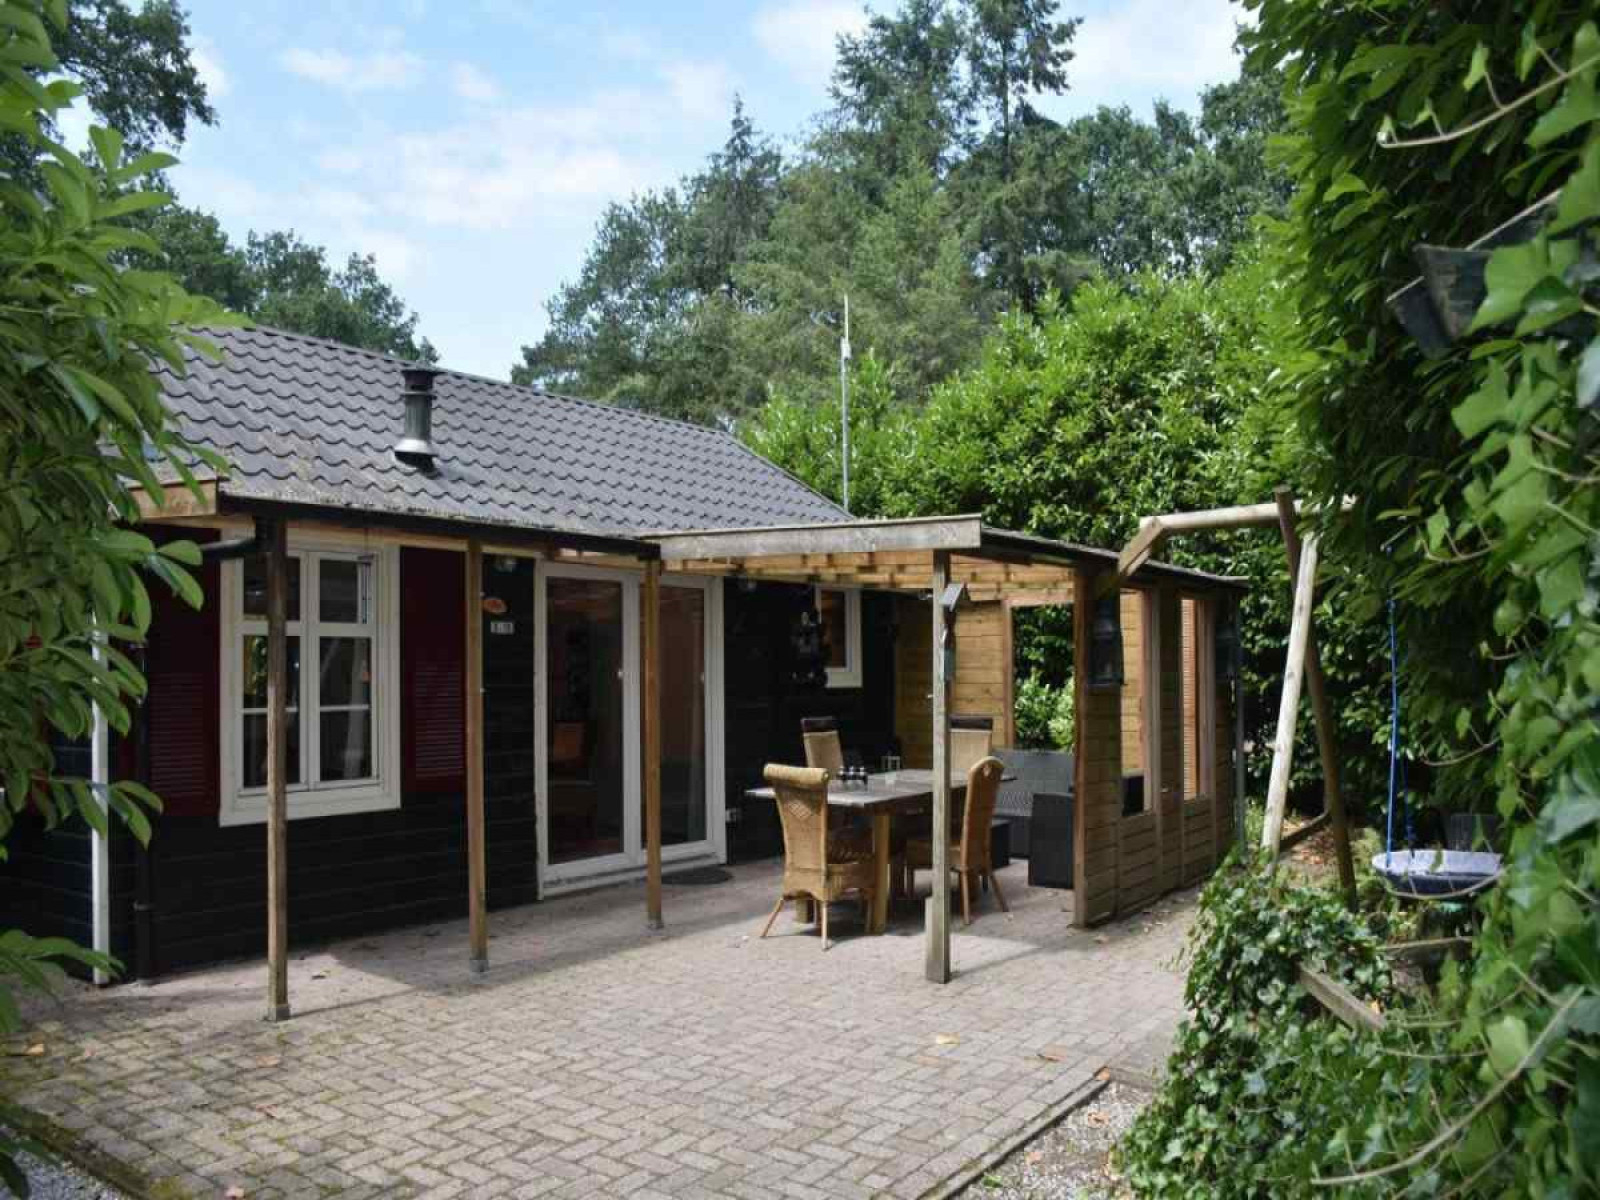 Knus 4 persoons vakantiehuis nabij Ommen in het Sallandse landschap. - Nederland - Europa - Beerze